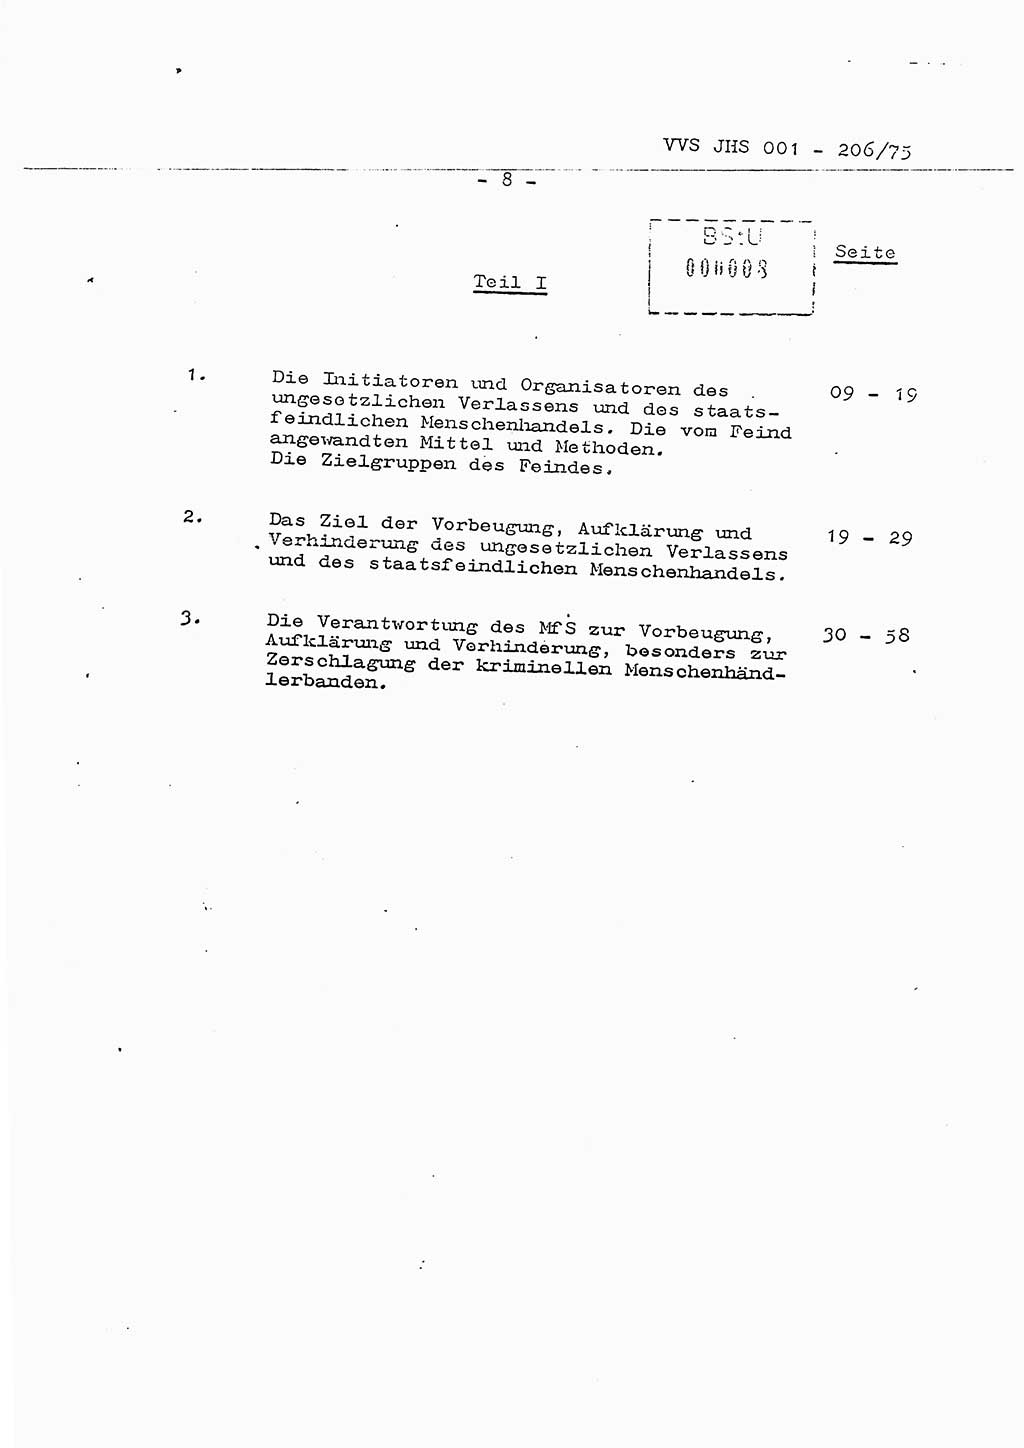 Dissertation Generalmajor Manfred Hummitzsch (Leiter der BV Leipzig), Generalmajor Heinz Fiedler (HA Ⅵ), Oberst Rolf Fister (HA Ⅸ), Ministerium für Staatssicherheit (MfS) [Deutsche Demokratische Republik (DDR)], Juristische Hochschule (JHS), Vertrauliche Verschlußsache (VVS) 001-206/75, Potsdam 1975, Seite 8 (Diss. MfS DDR JHS VVS 001-206/75 1975, S. 8)